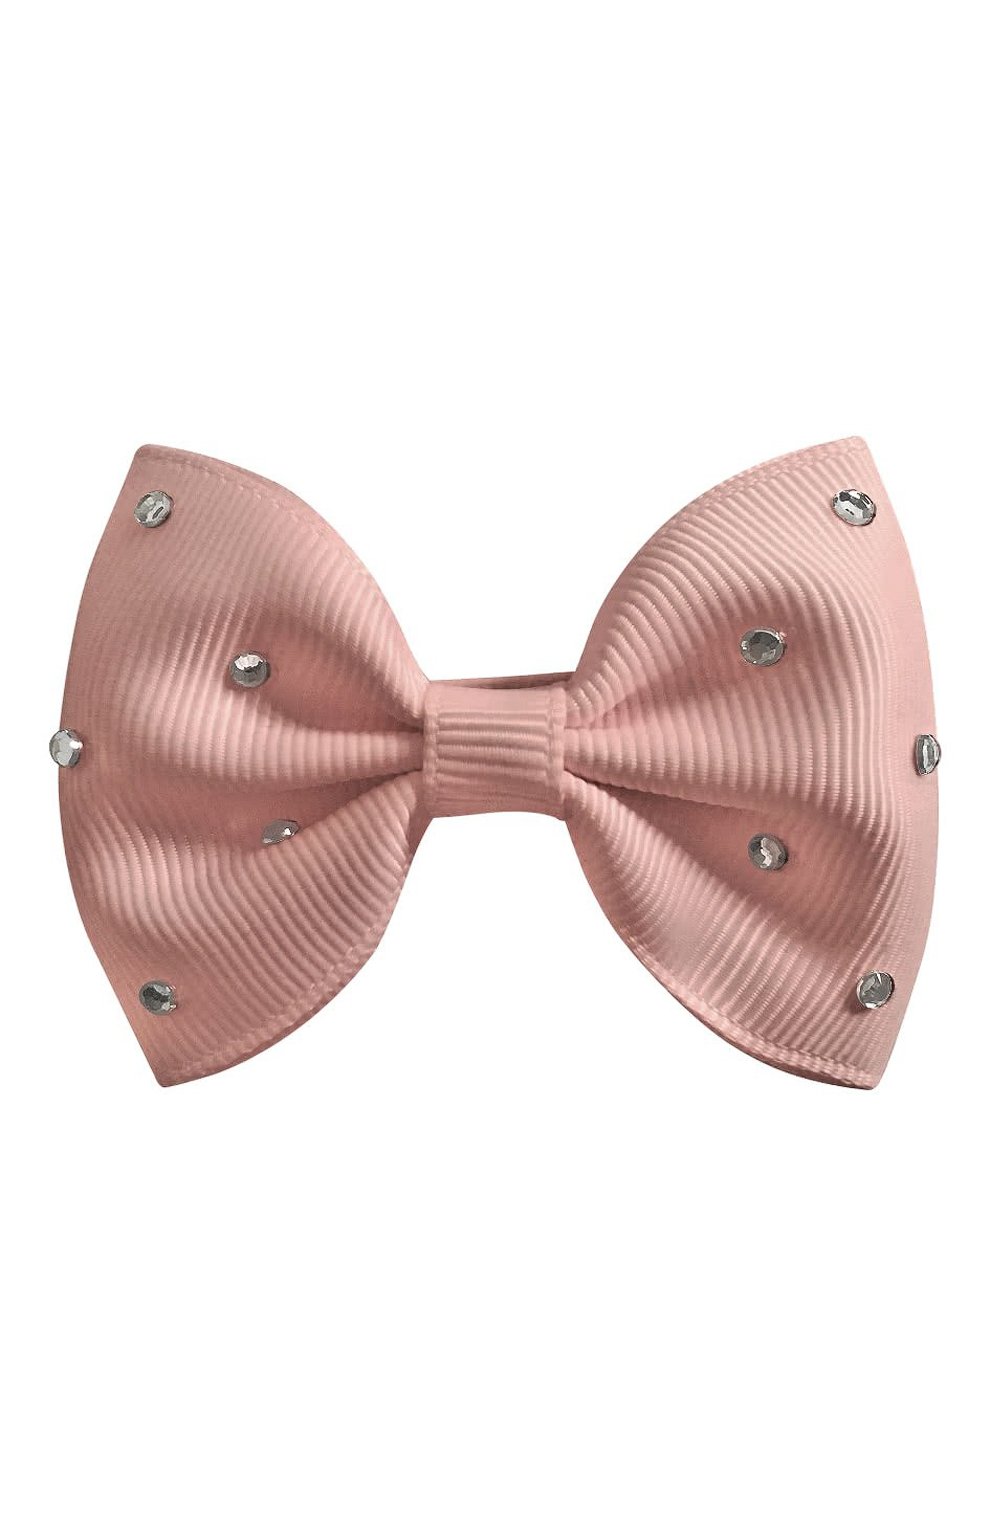 Детская заколка-зажим bowtie bow MILLEDEUX светло-розового цвета, арт. 164-GLGC-04 | Фото 1